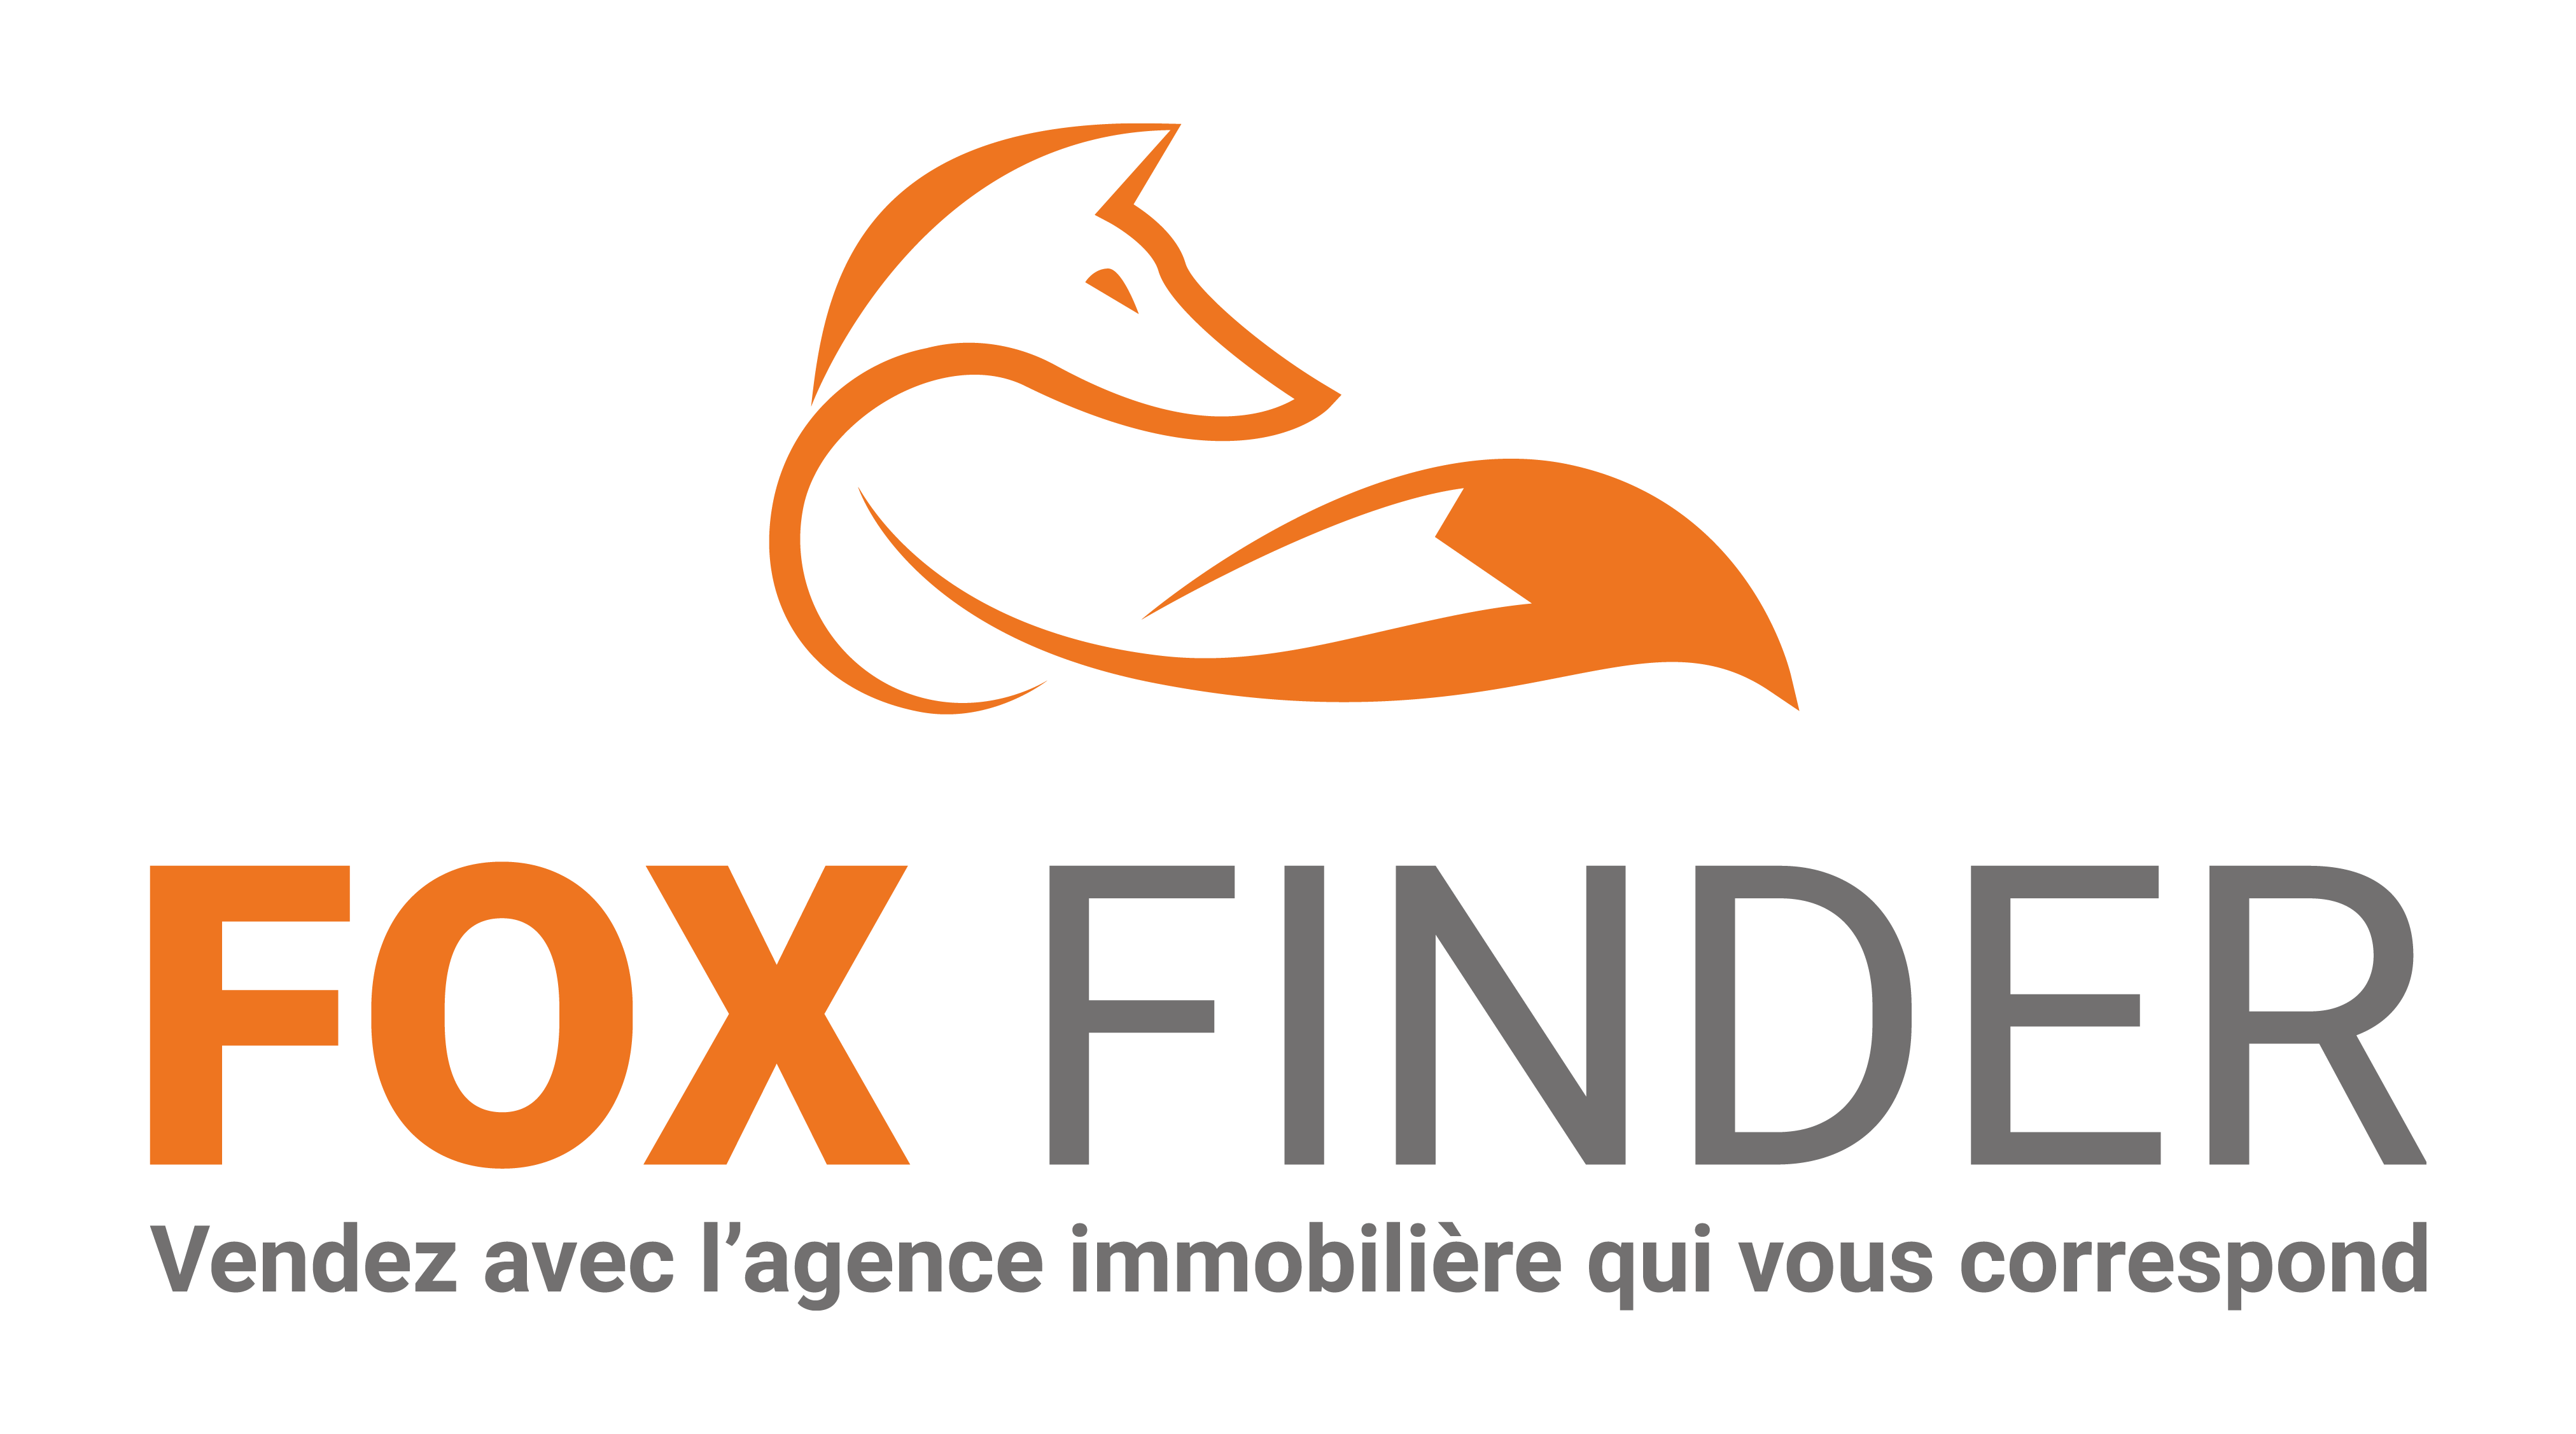 Foxfinder Logo Recherche Immobilier Annuaire